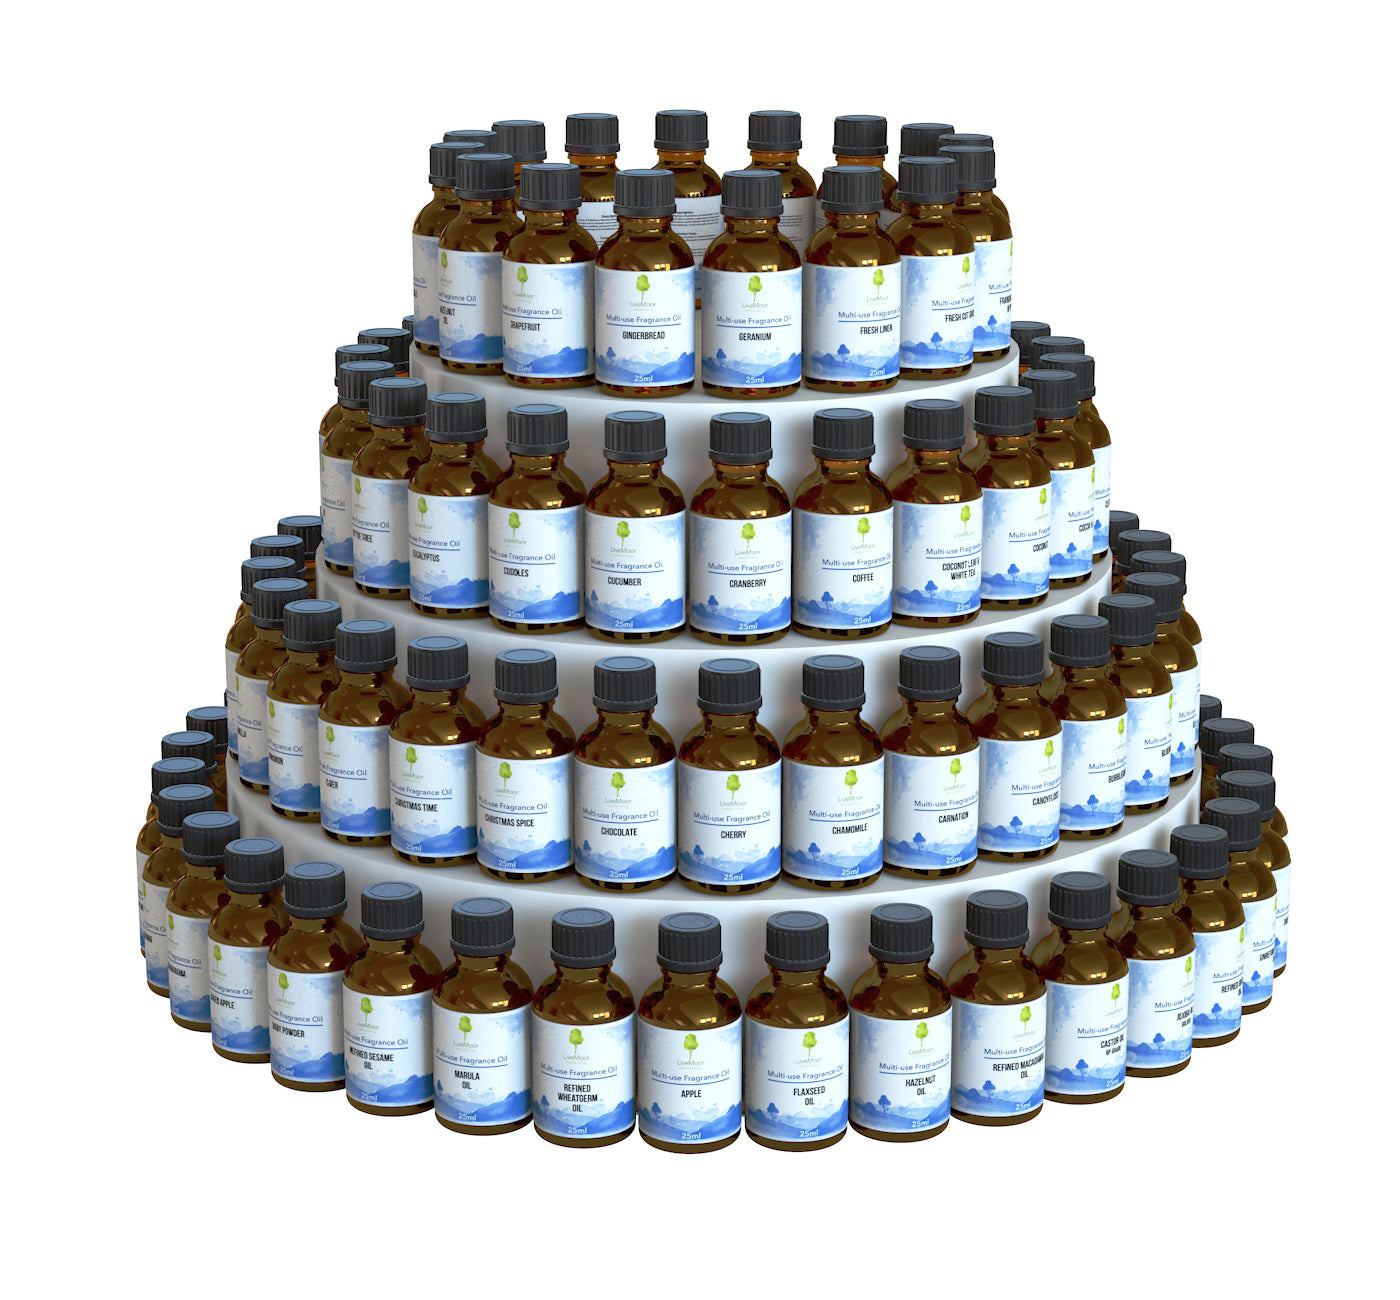 TEMP Diverses huiles parfumées (sans parabènes) - 100 ml à 1 L - Pré-commande uniquement